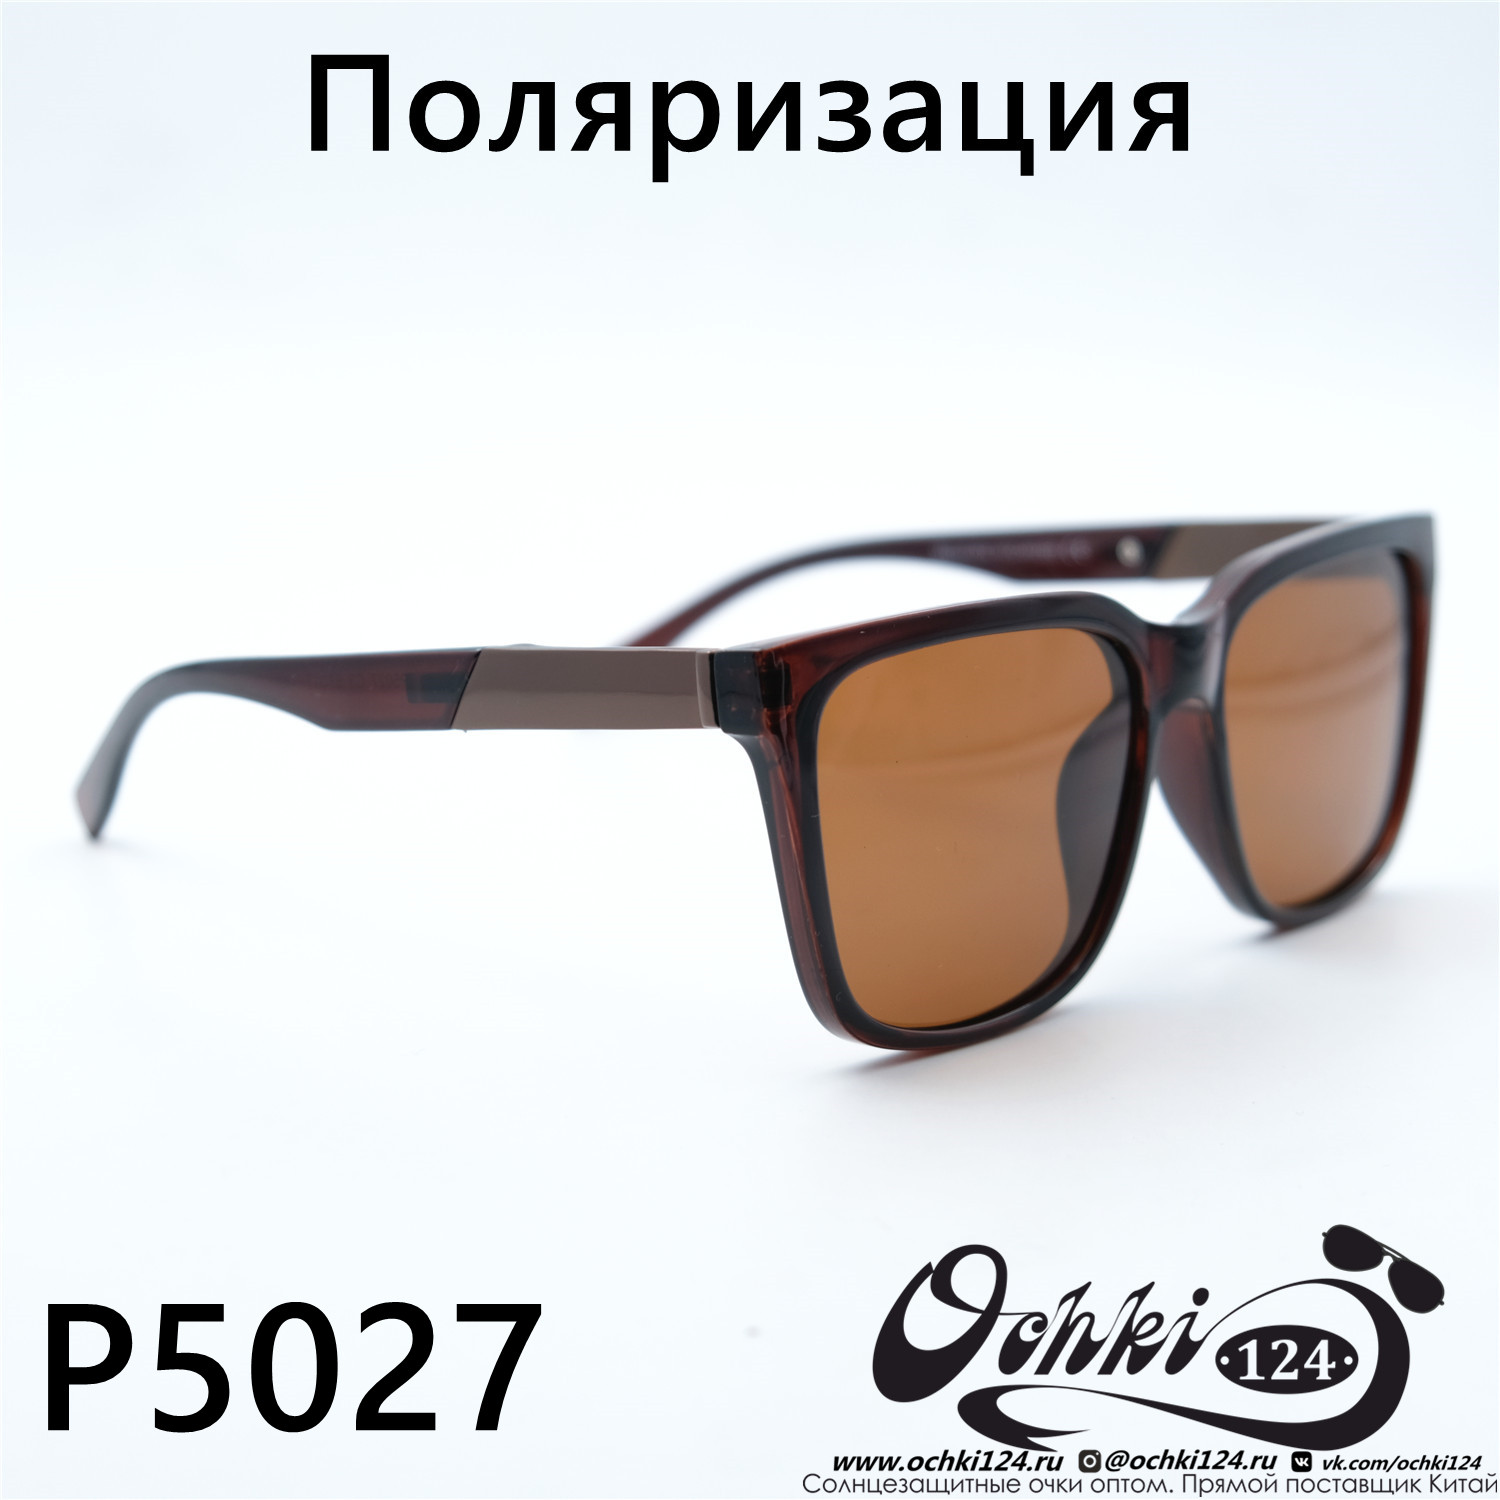  Солнцезащитные очки картинка 2023 Мужские Геометрические Maiersha P5027-C3 